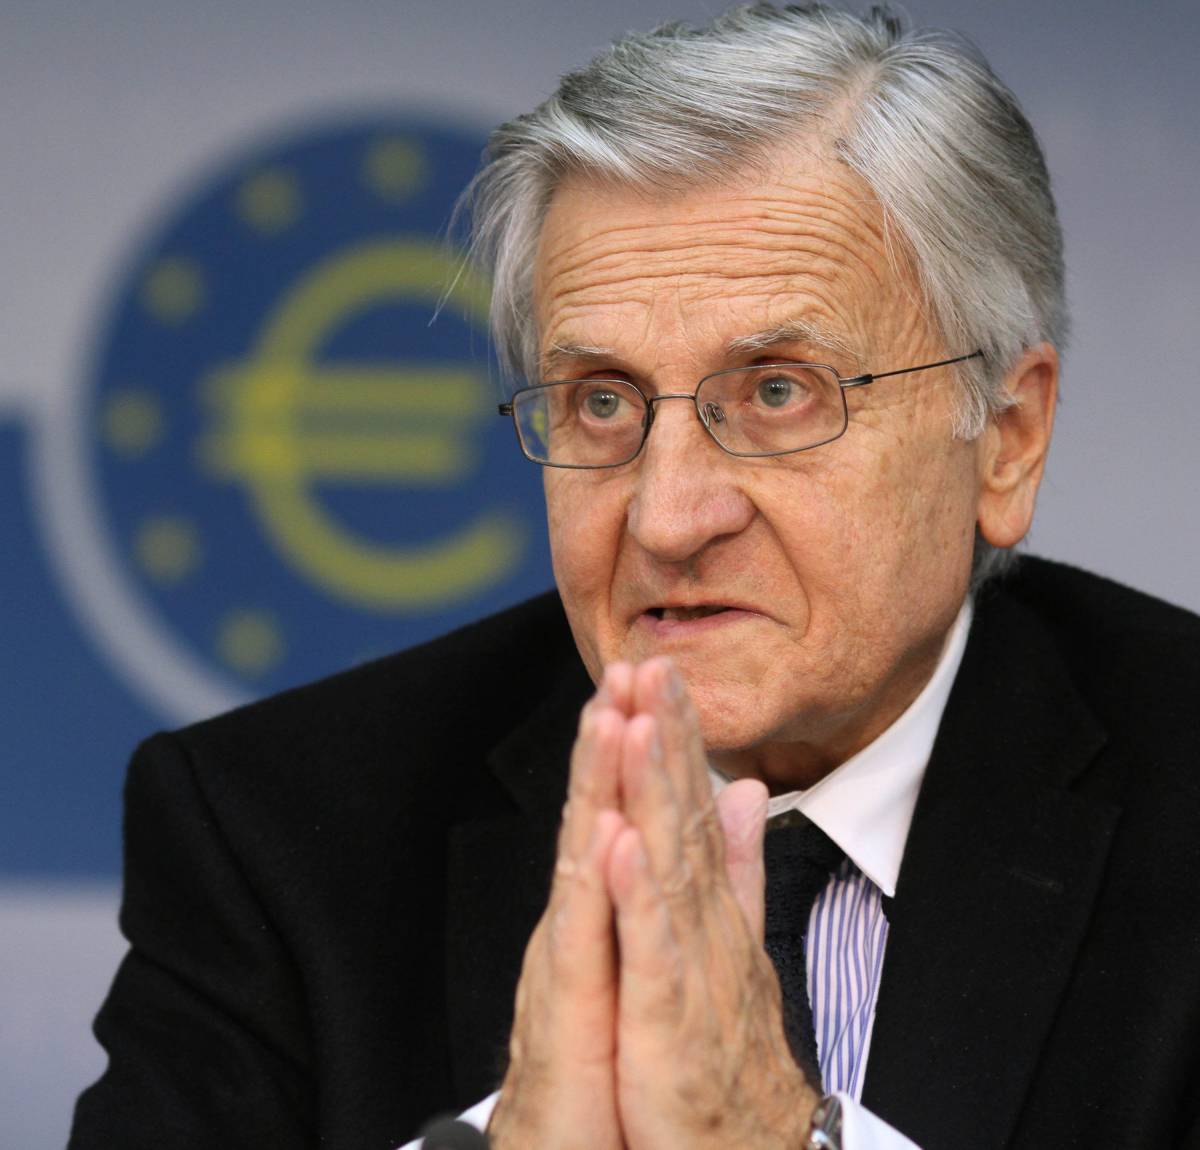 Il monito della Bce all'Eurozona: "Fare presto" 
Avanti con l'acquisto dei titoli di Stato italiani